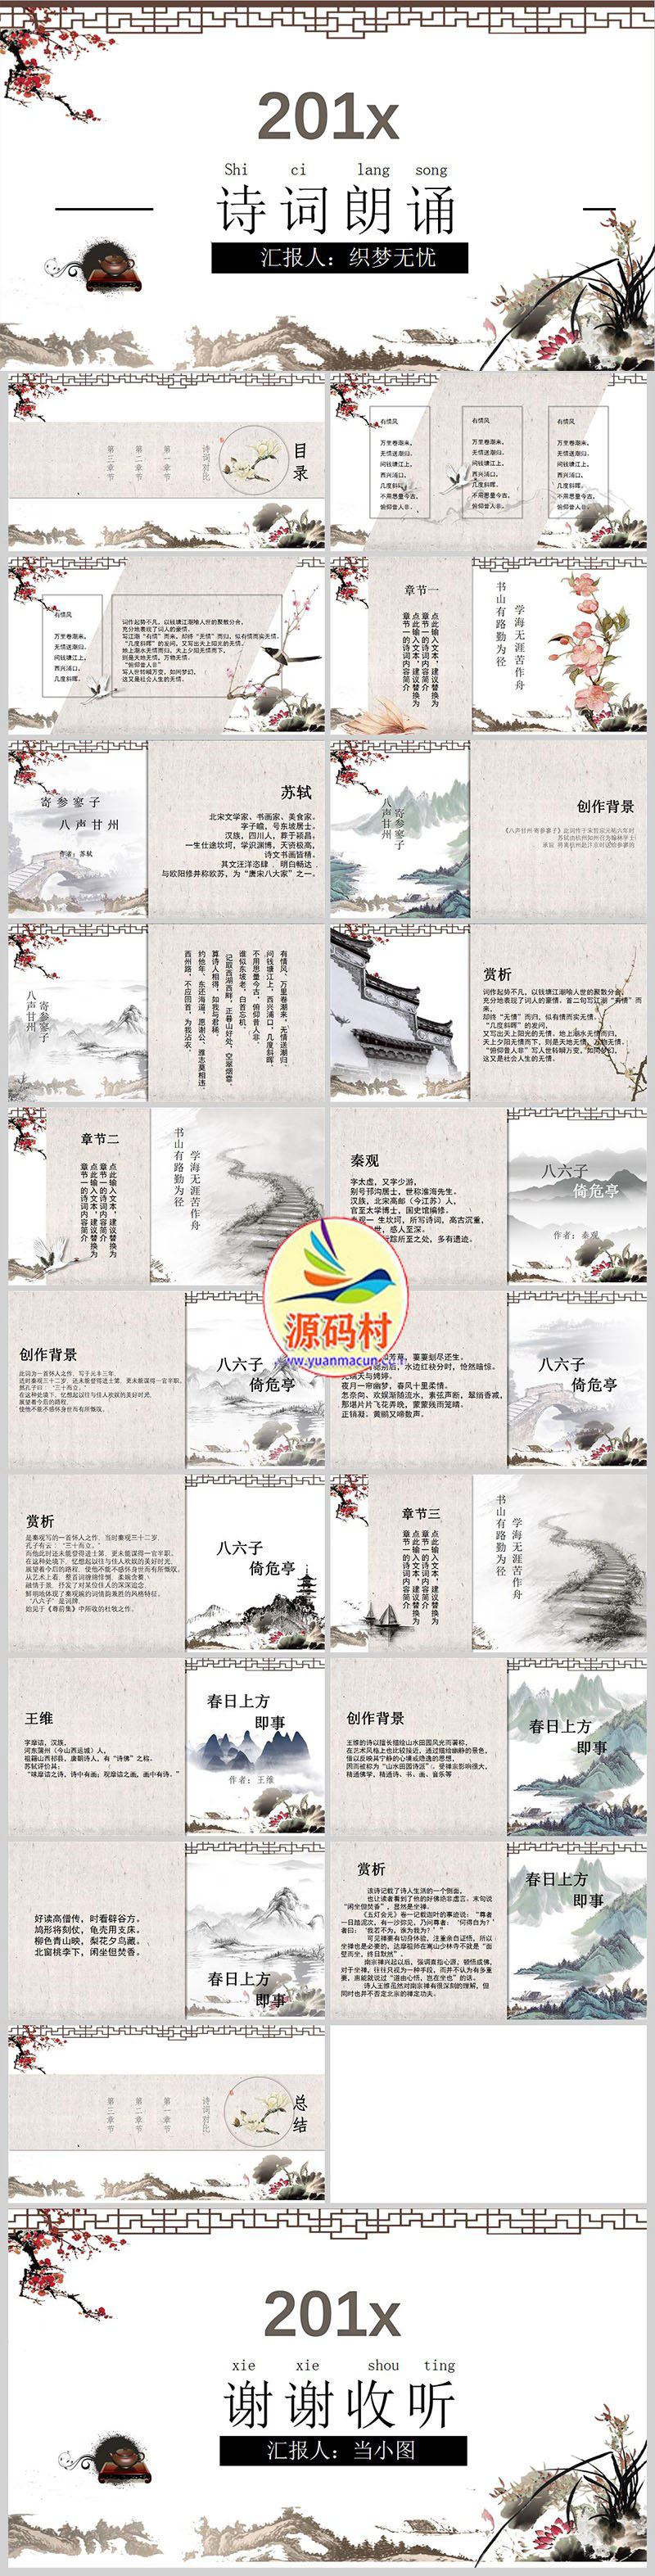 古典风格中国风诗词朗诵演讲通用ppt模板下载,1.jpg,模板下载,第1张